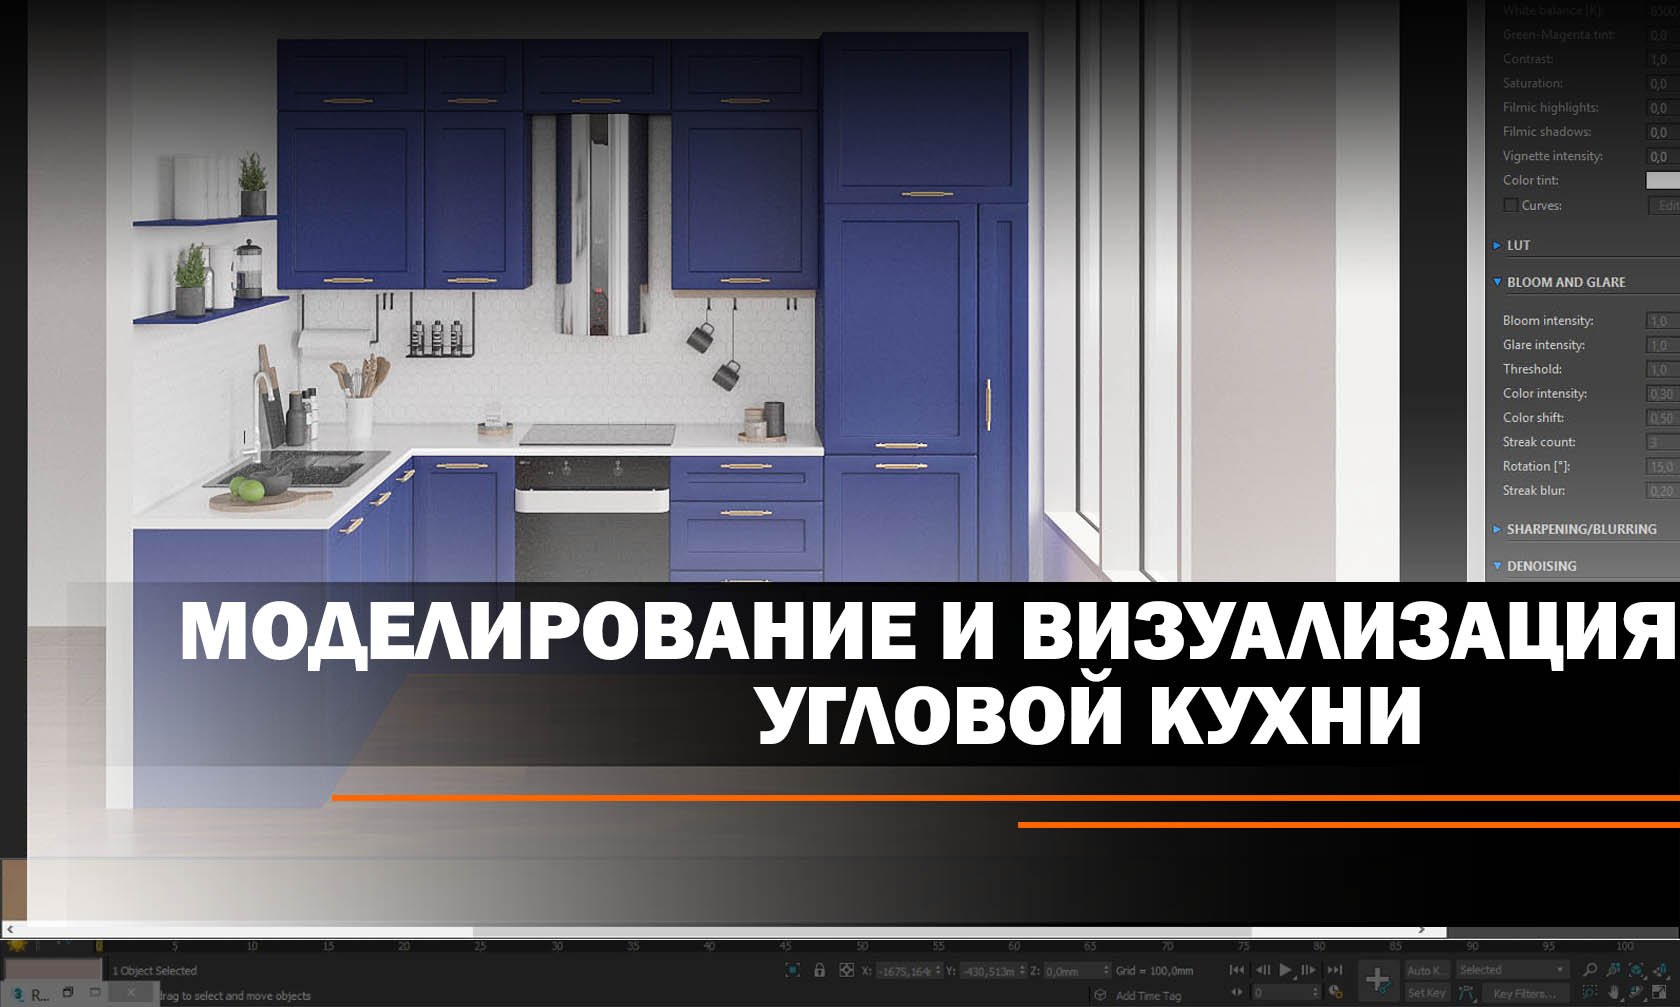 Моделирование и визуализация угловой кухни в 3ds Max.